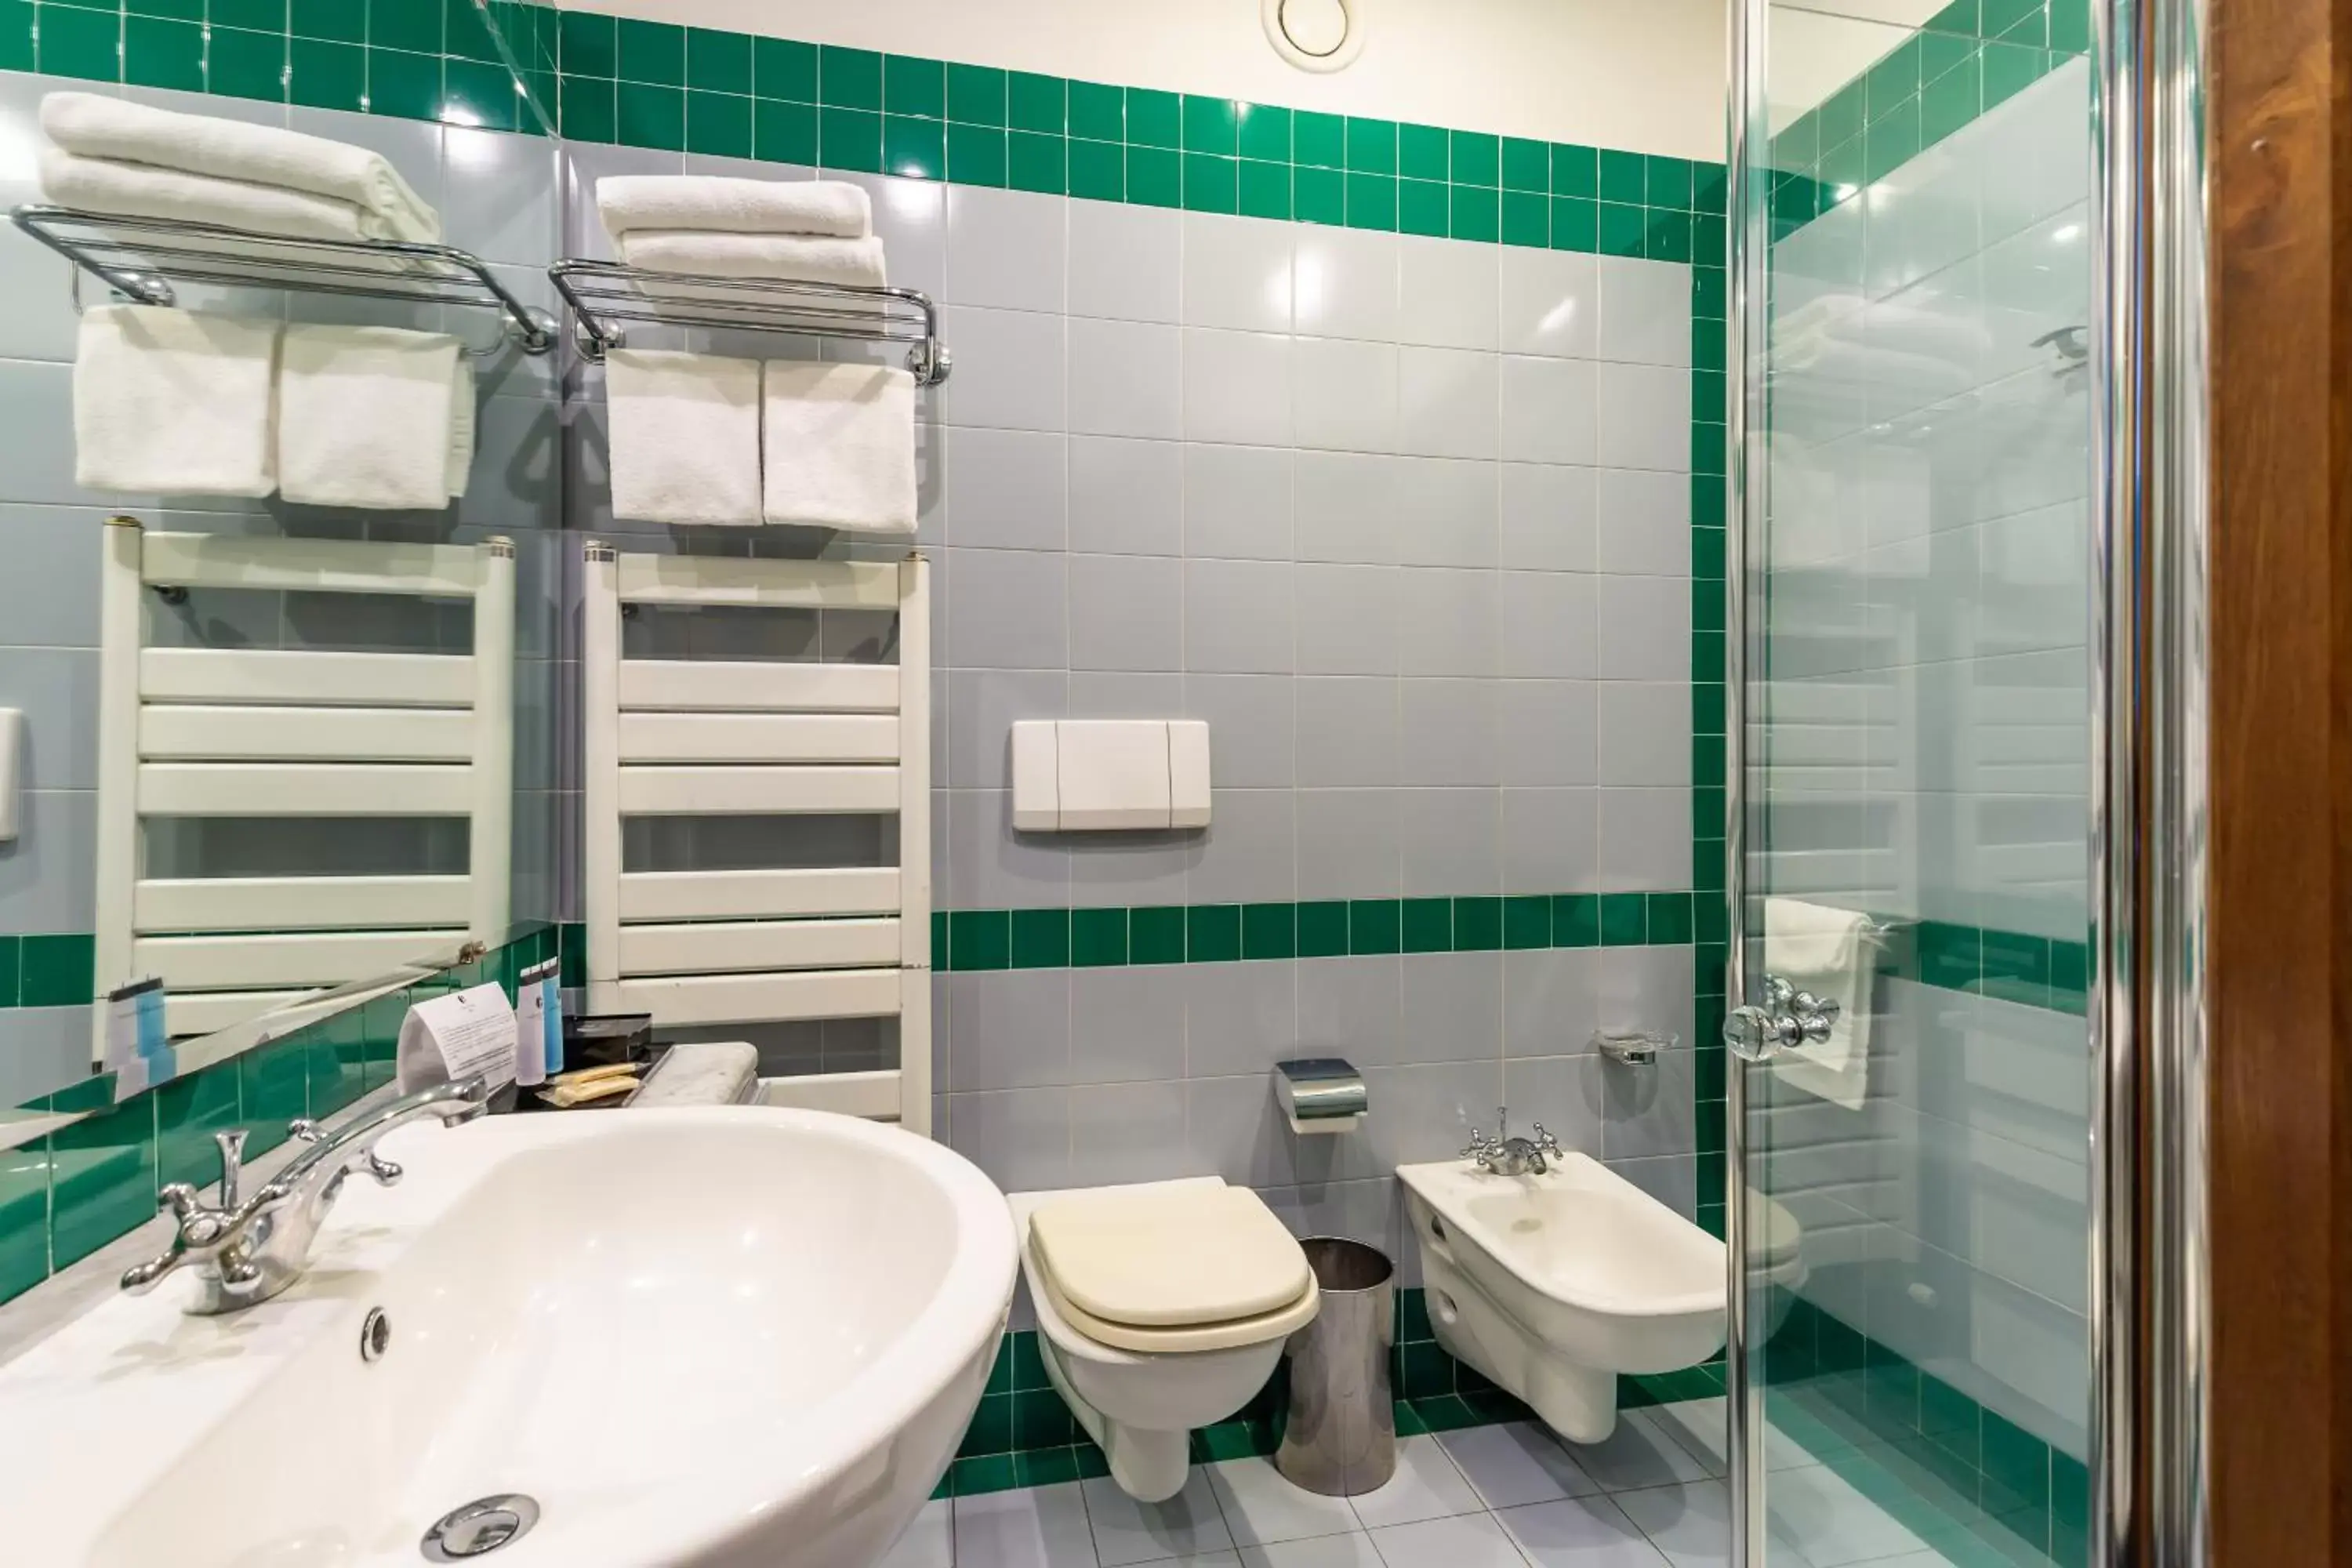 Bathroom in Culture Hotel Villa Capodimonte